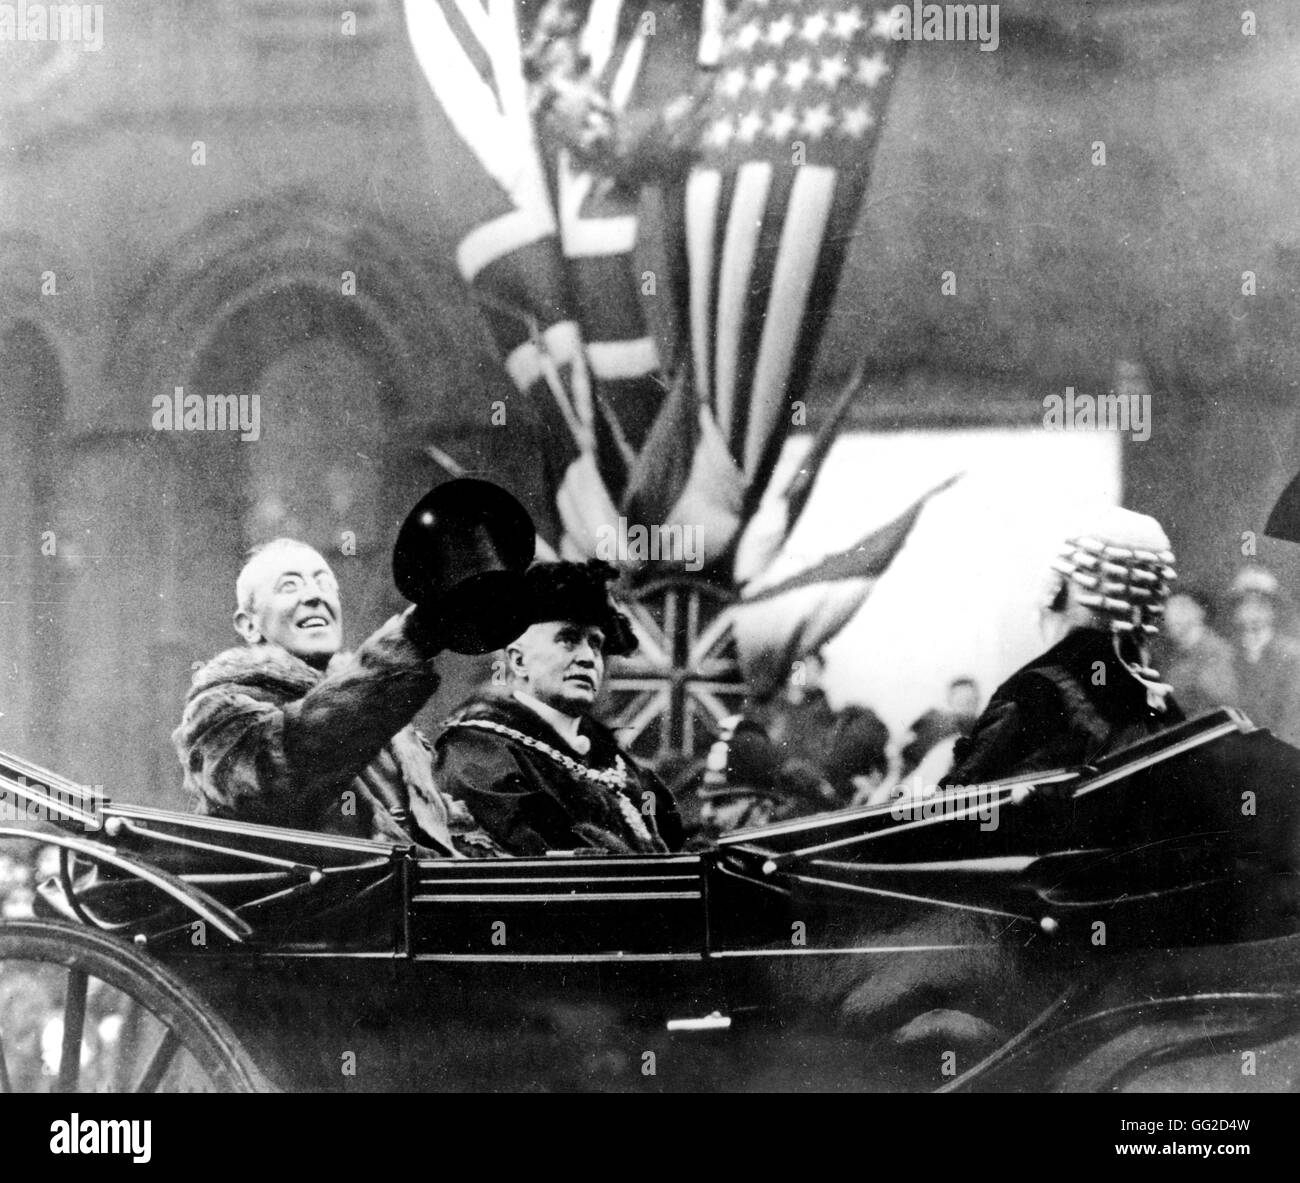 Präsident Wilson in einer Kalesche Kutsche, London 1917 - 1918 Vereinigtes Königreich - Weltkrieg Vincennes. Kriegsmuseum Stockfoto